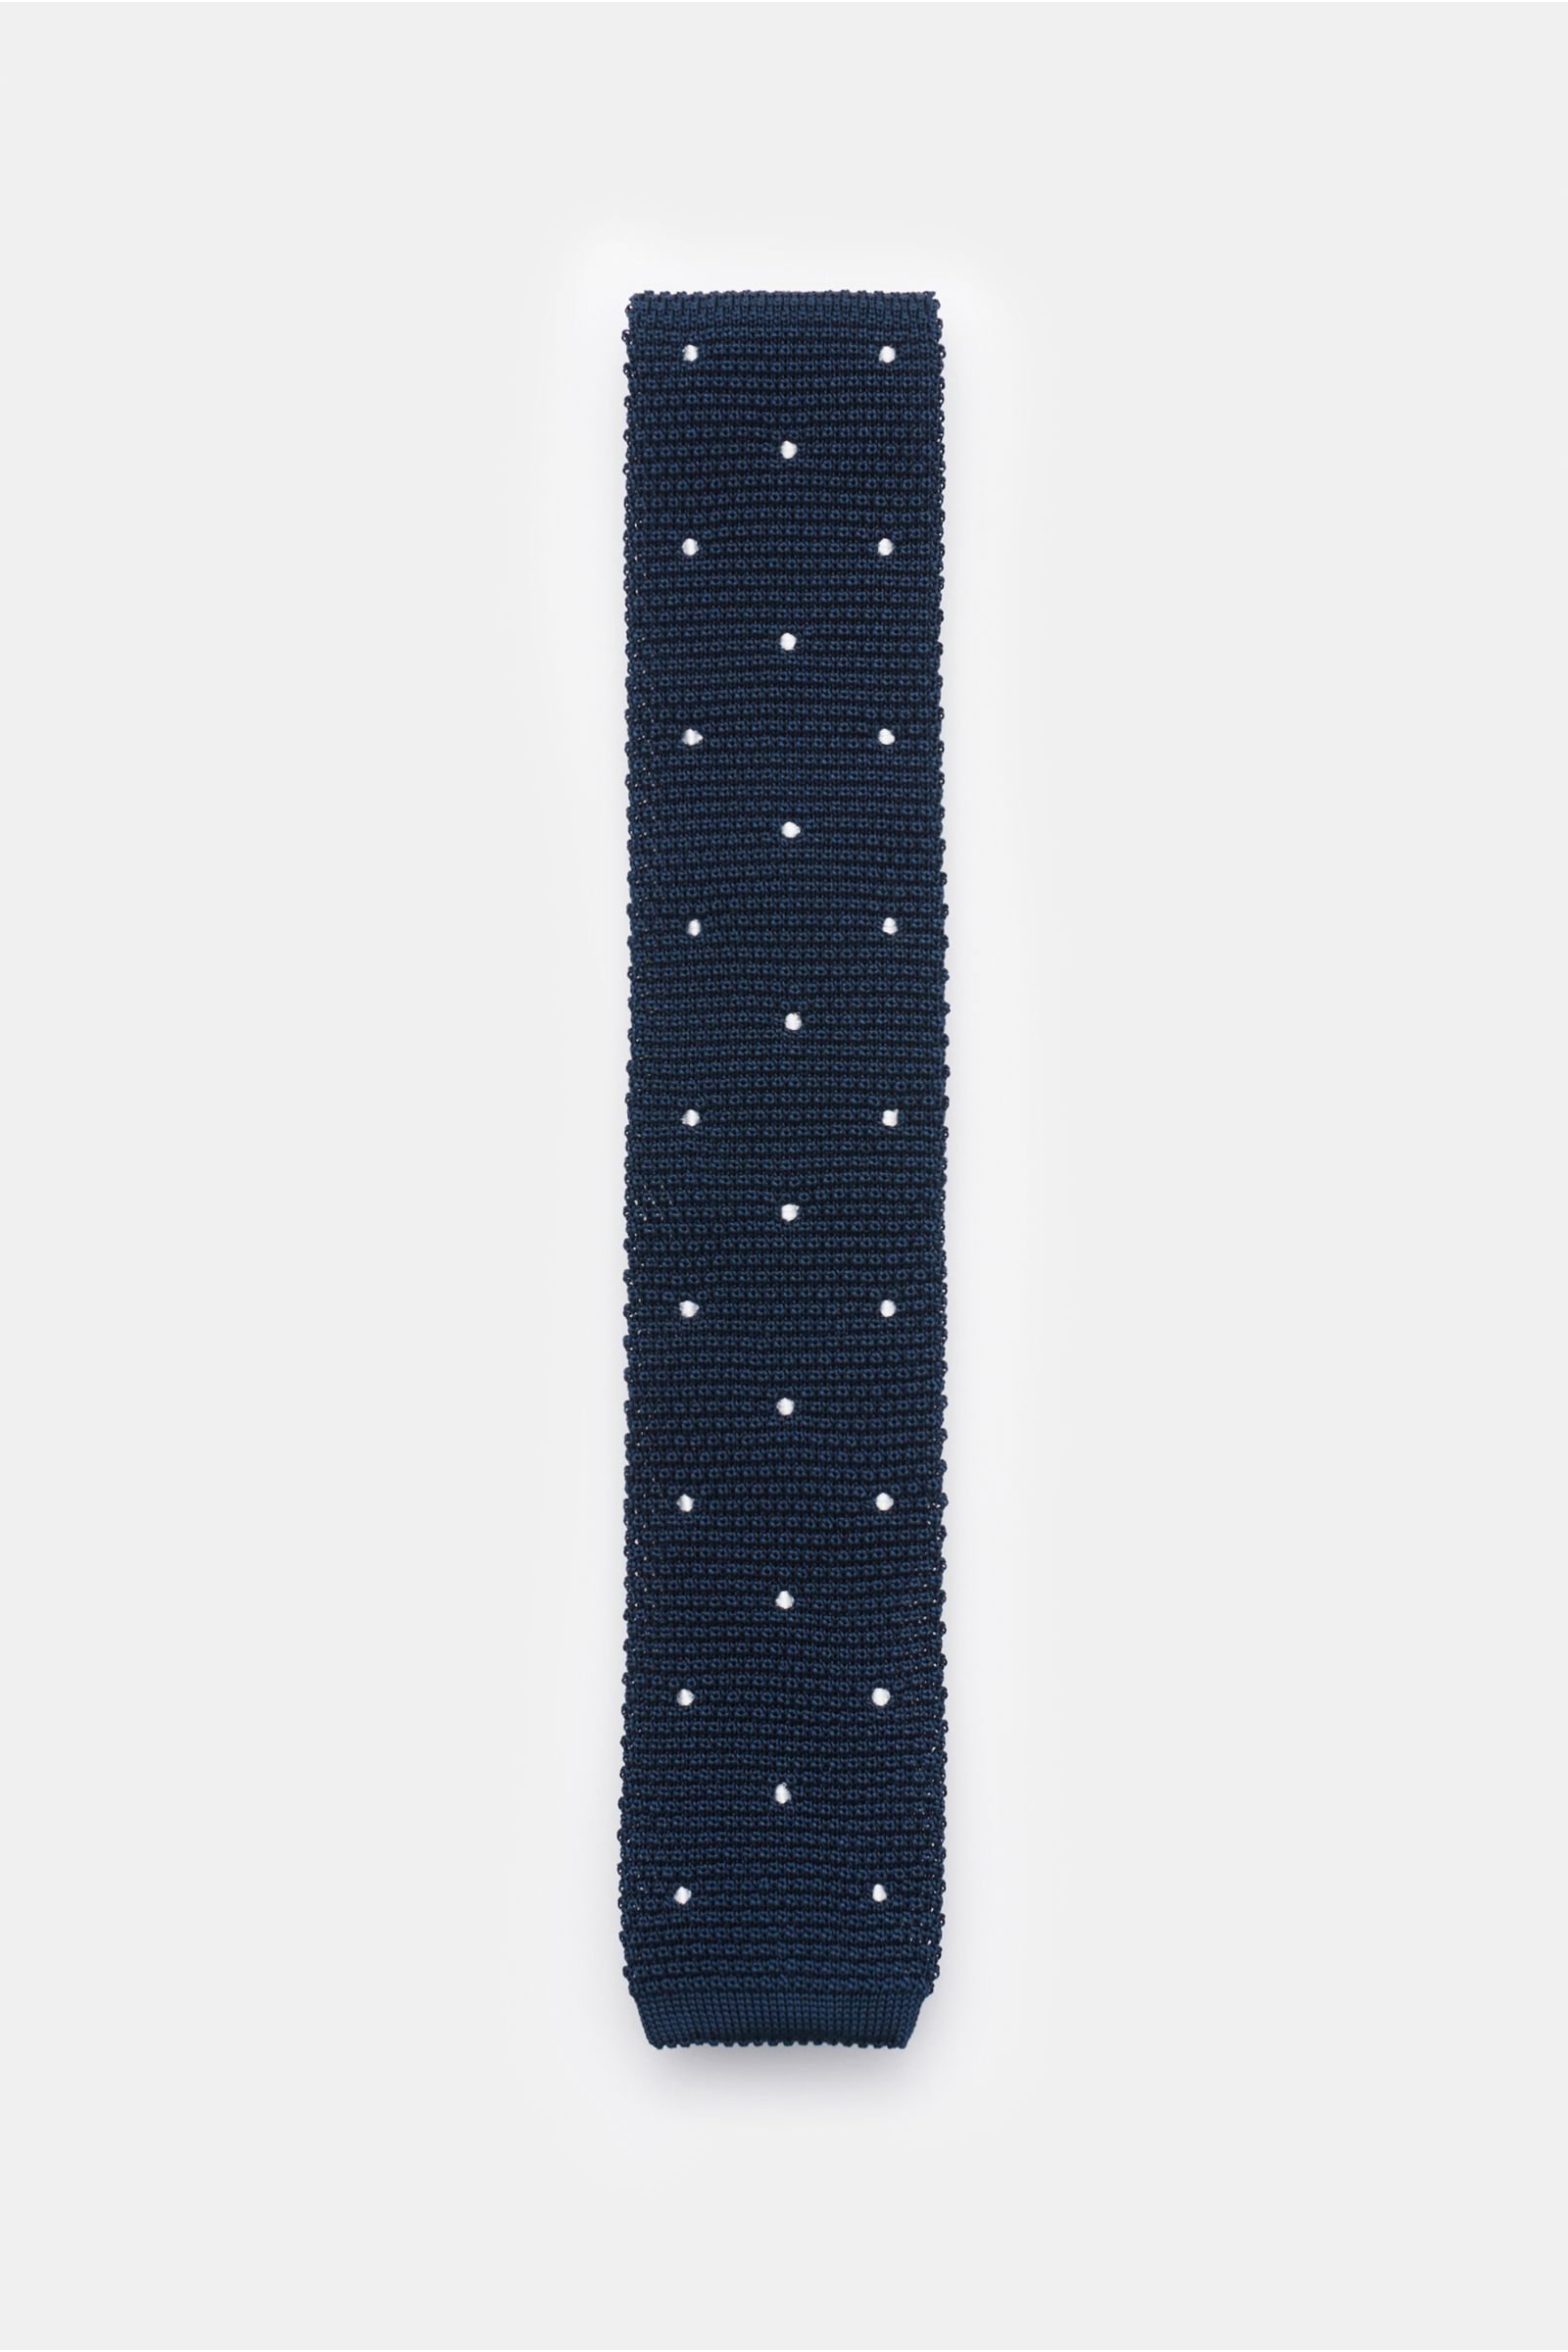 Silk knit tie navy/white dotted